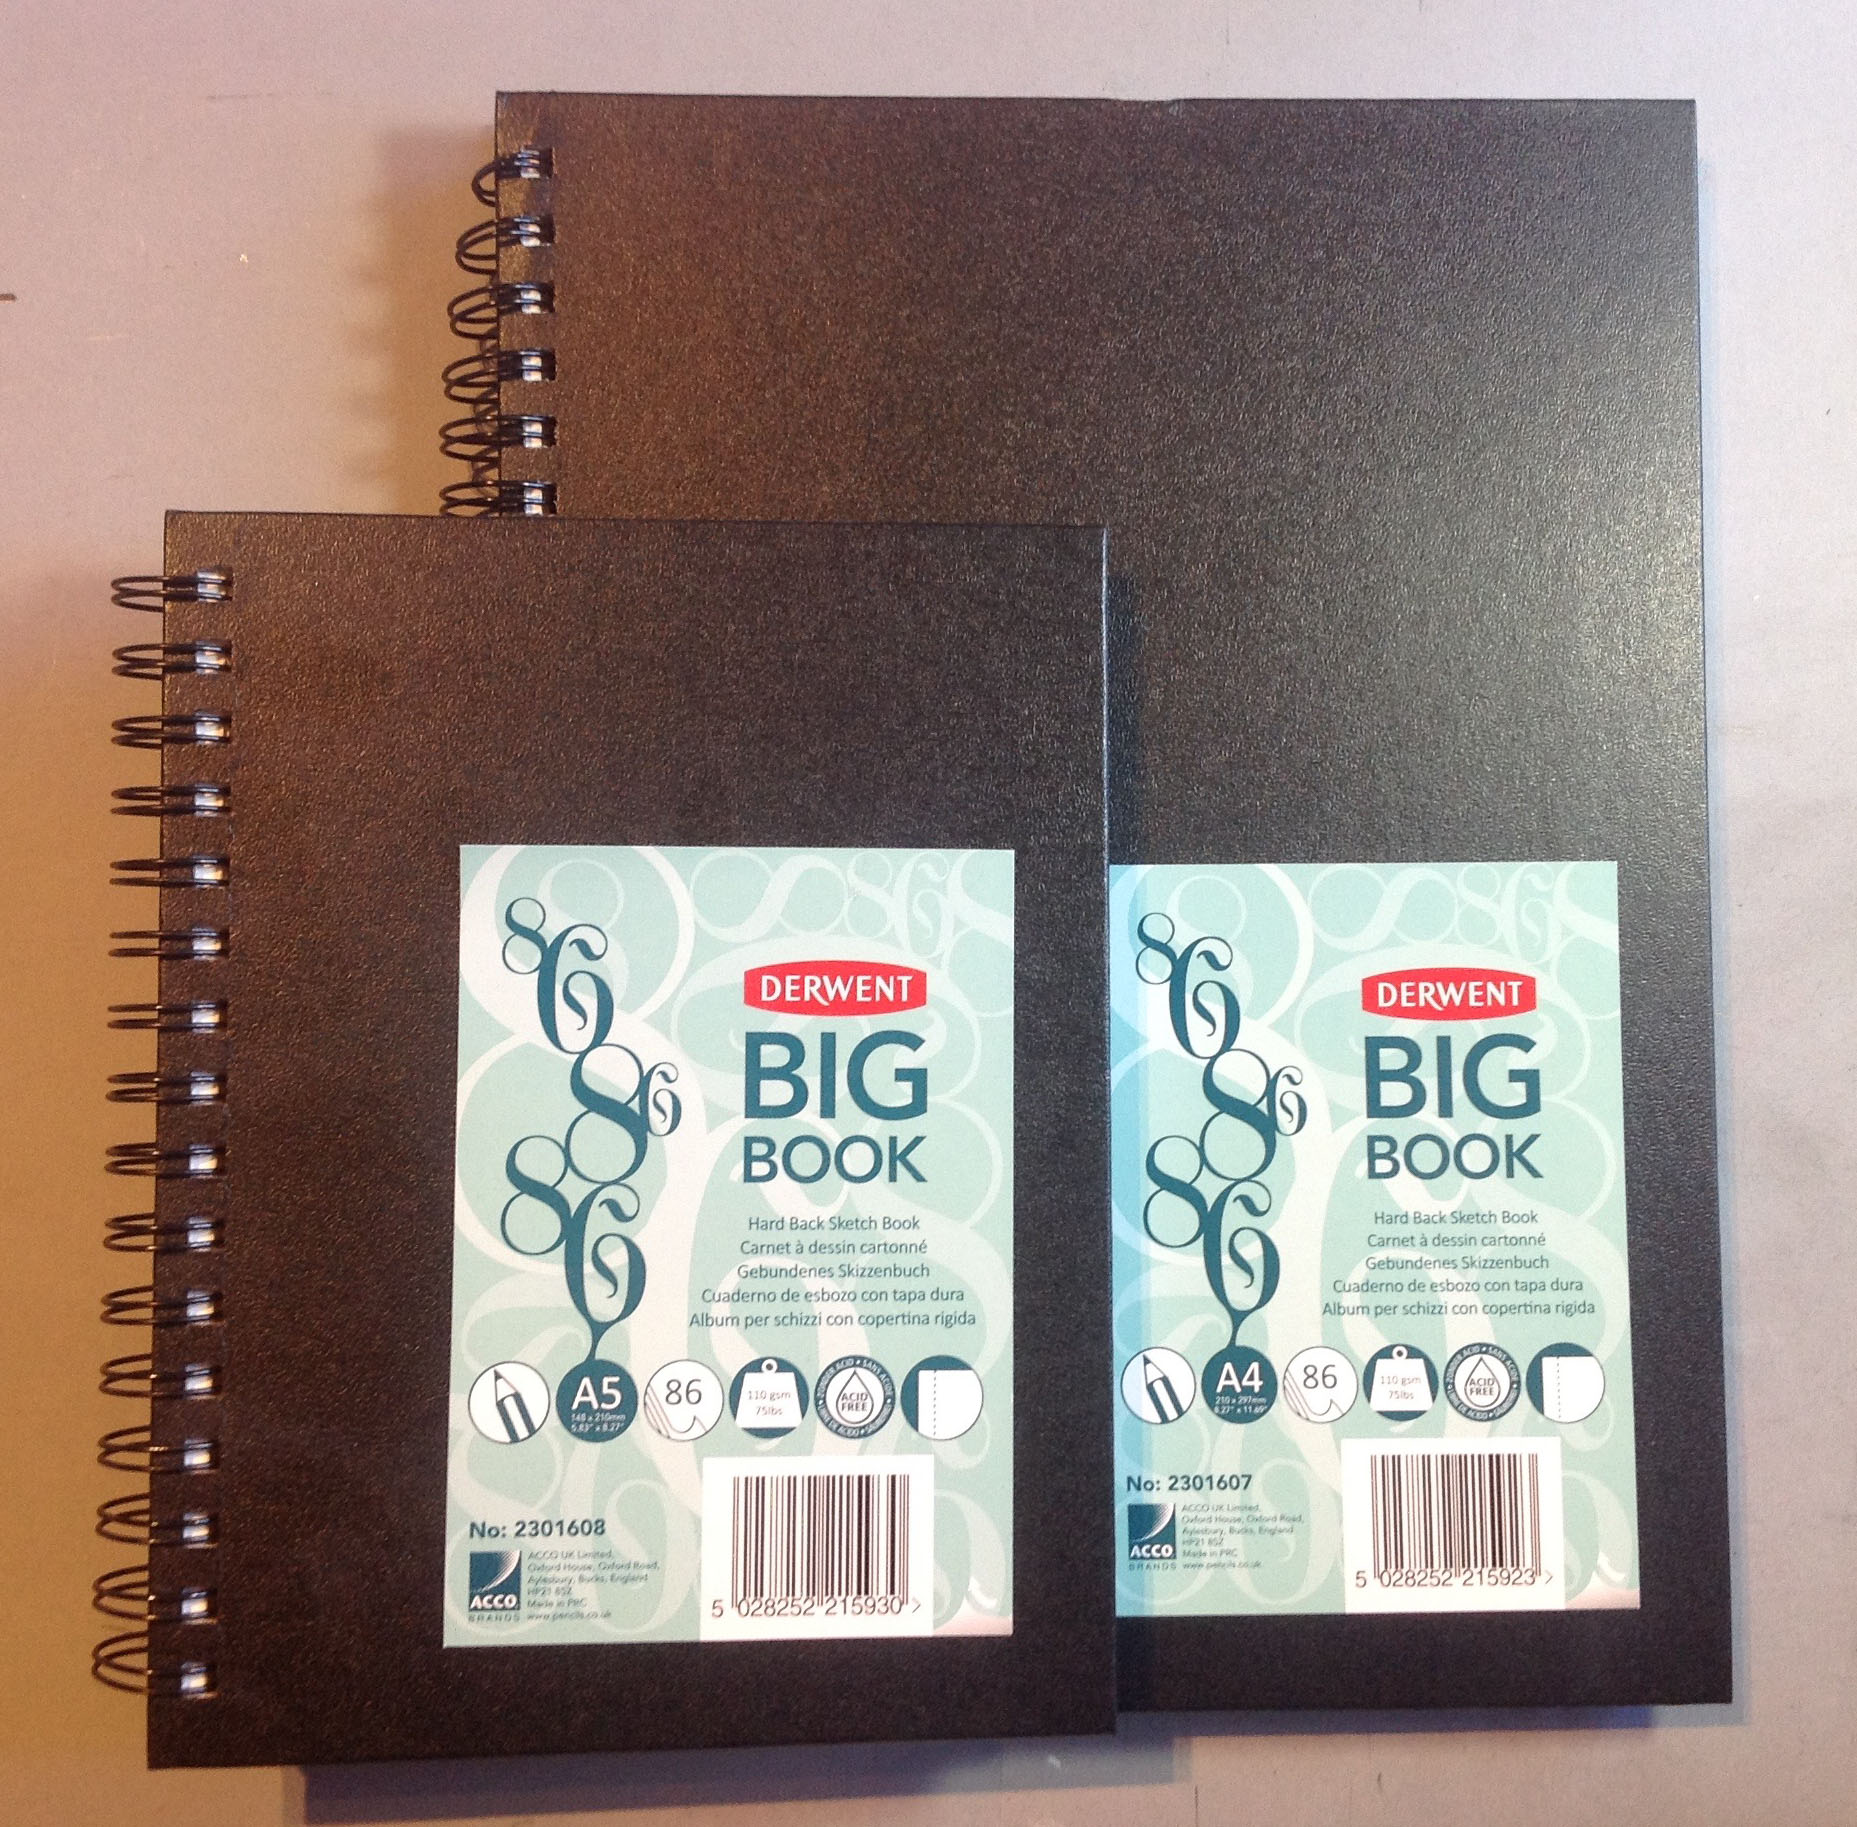 Derwent The Big Book Hardback Sketch Book - Derwent A4